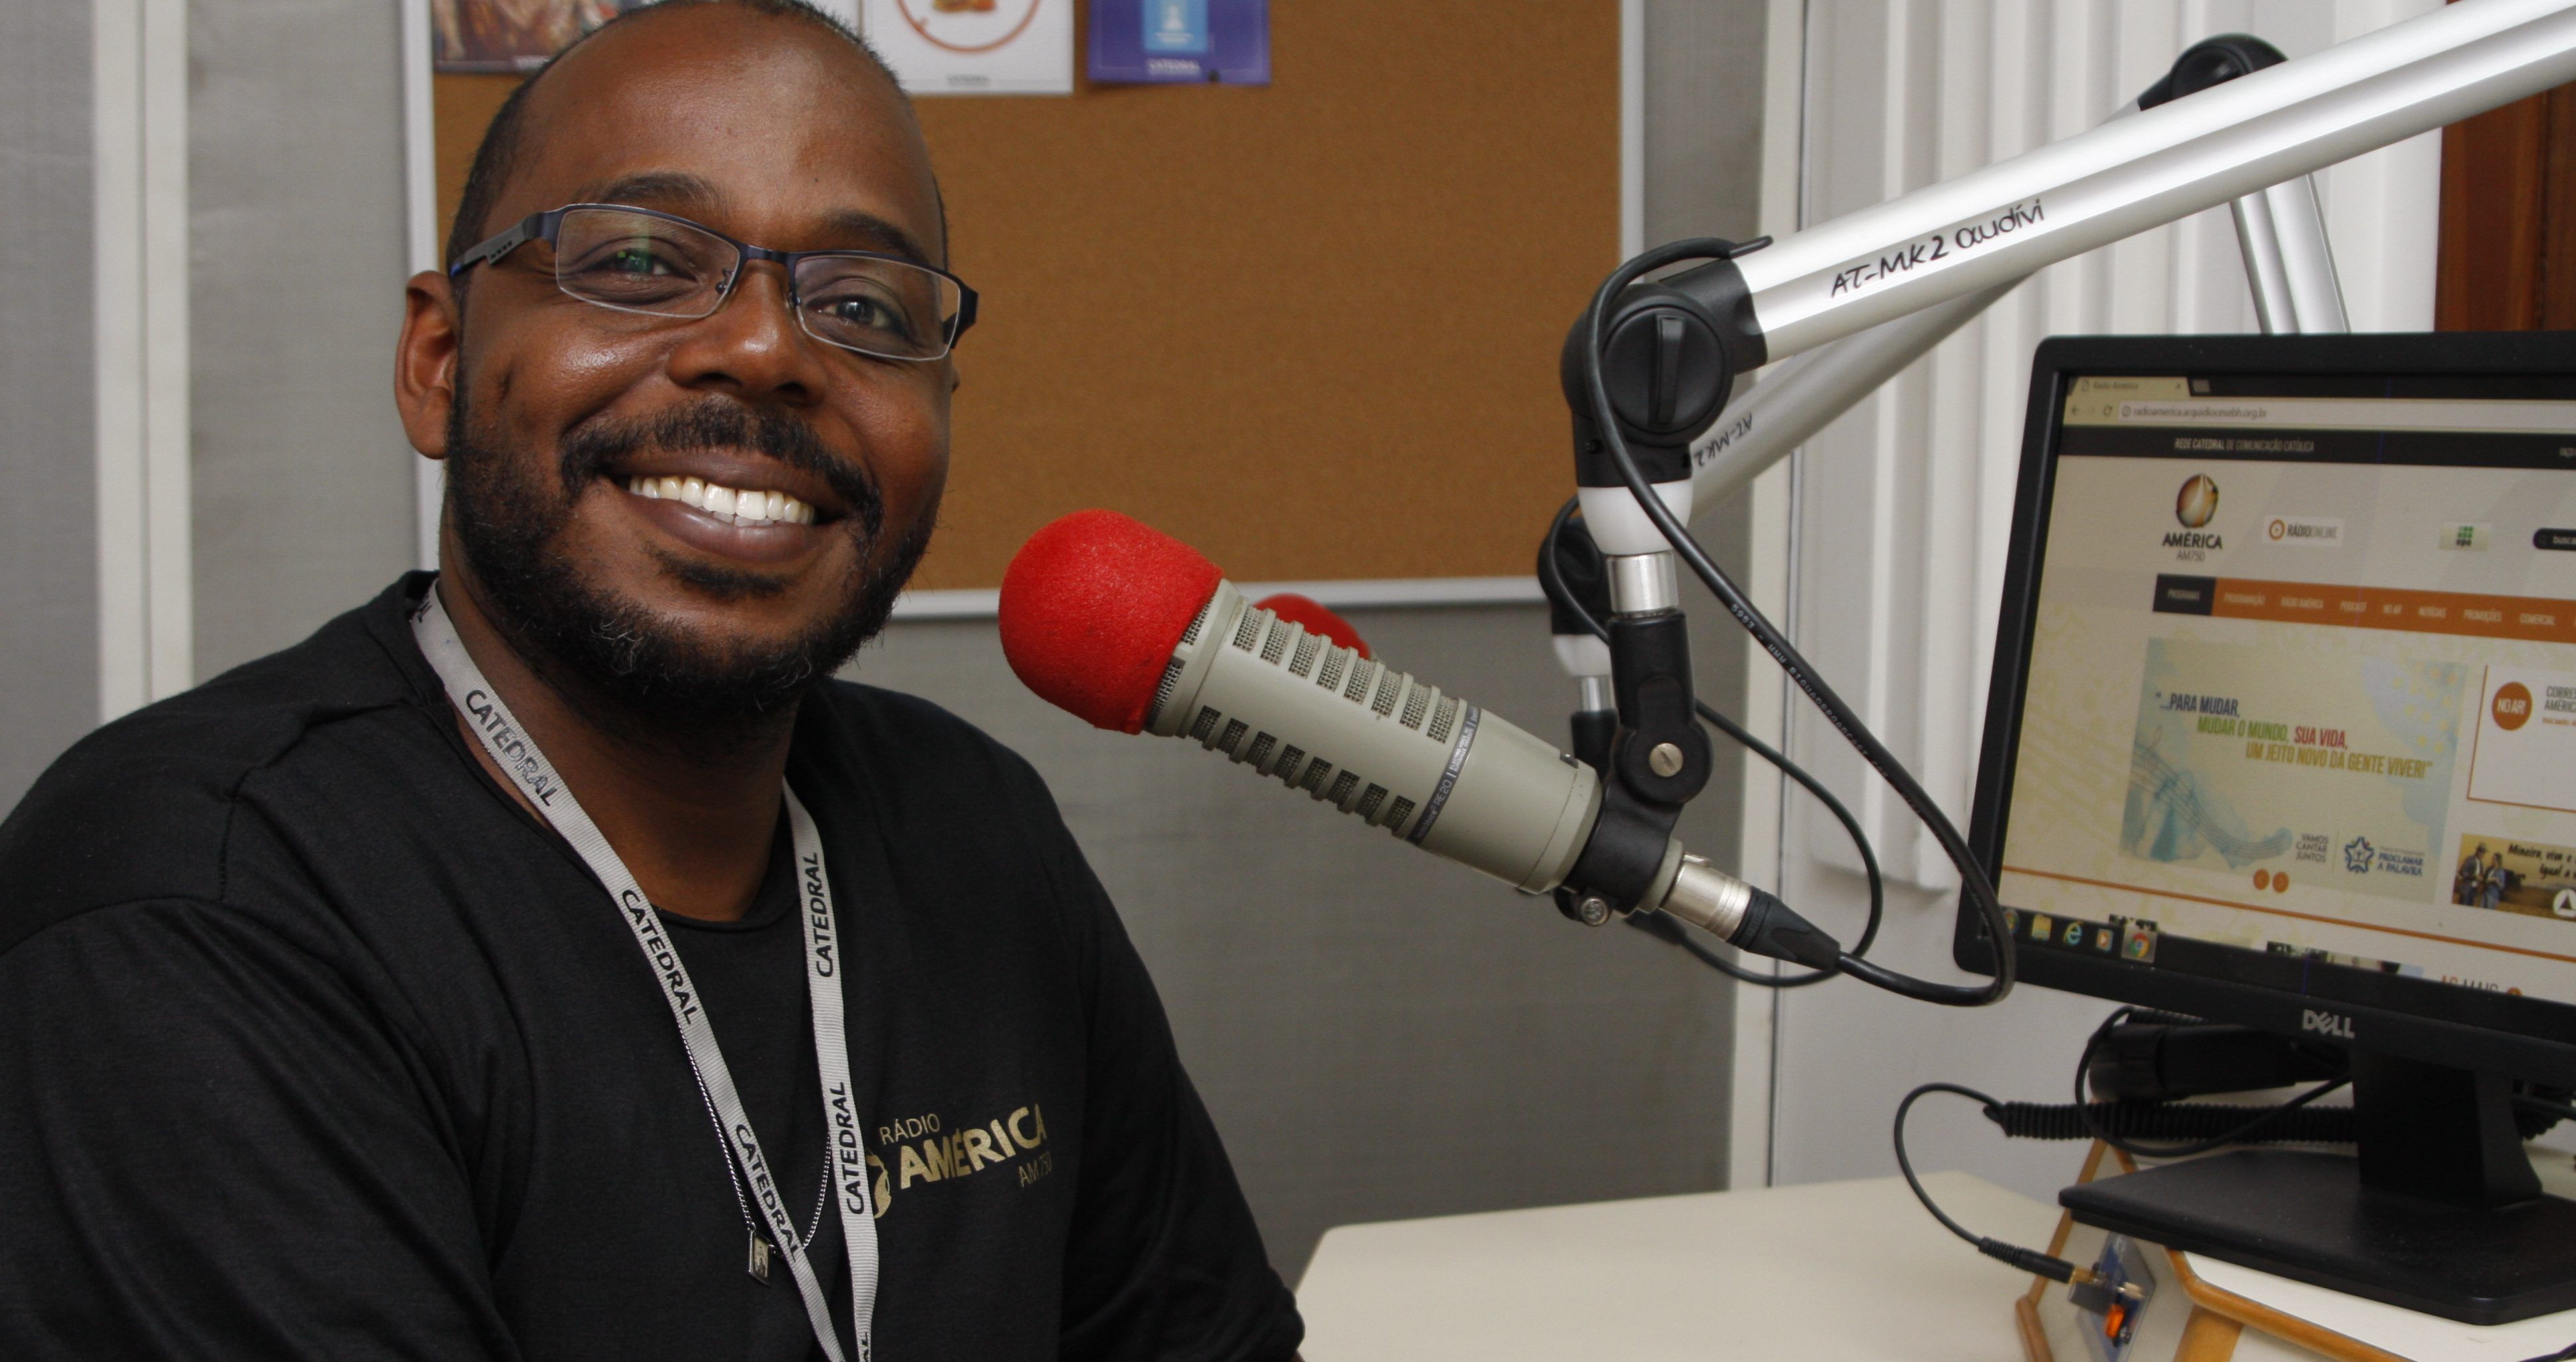 Rádio América apresenta novidades na programação: “Jornada Jovem”